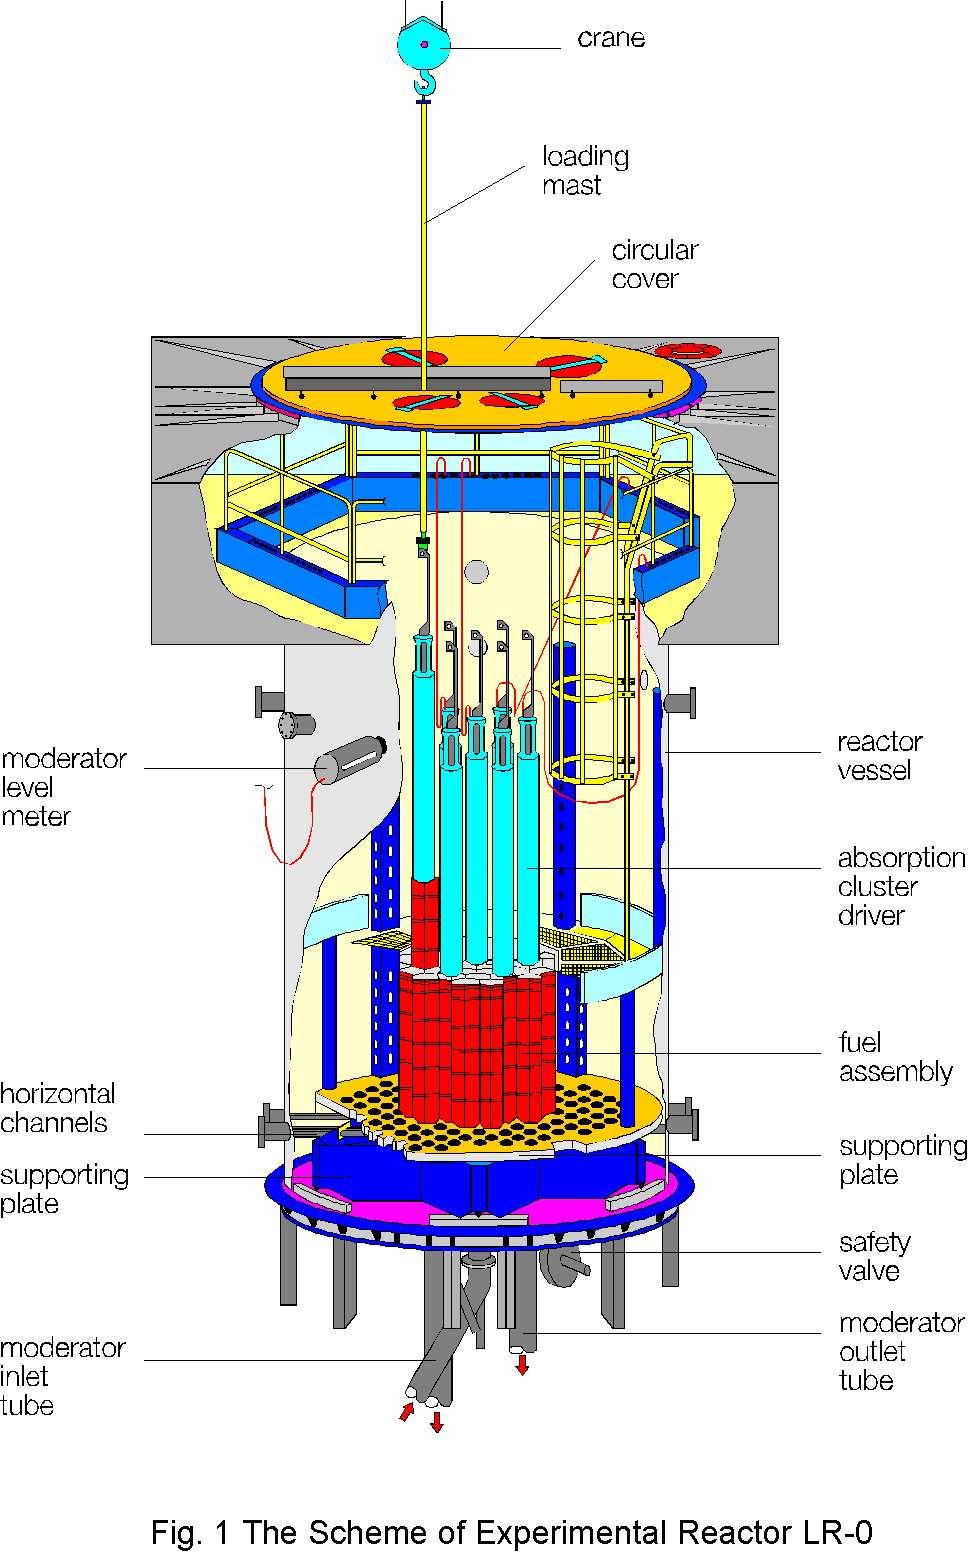 jeřáb zavážecí tyč otočné víko hladinoměr reaktorová nádoba pohony klastrů horizontální kanály podpůrná konstrukce